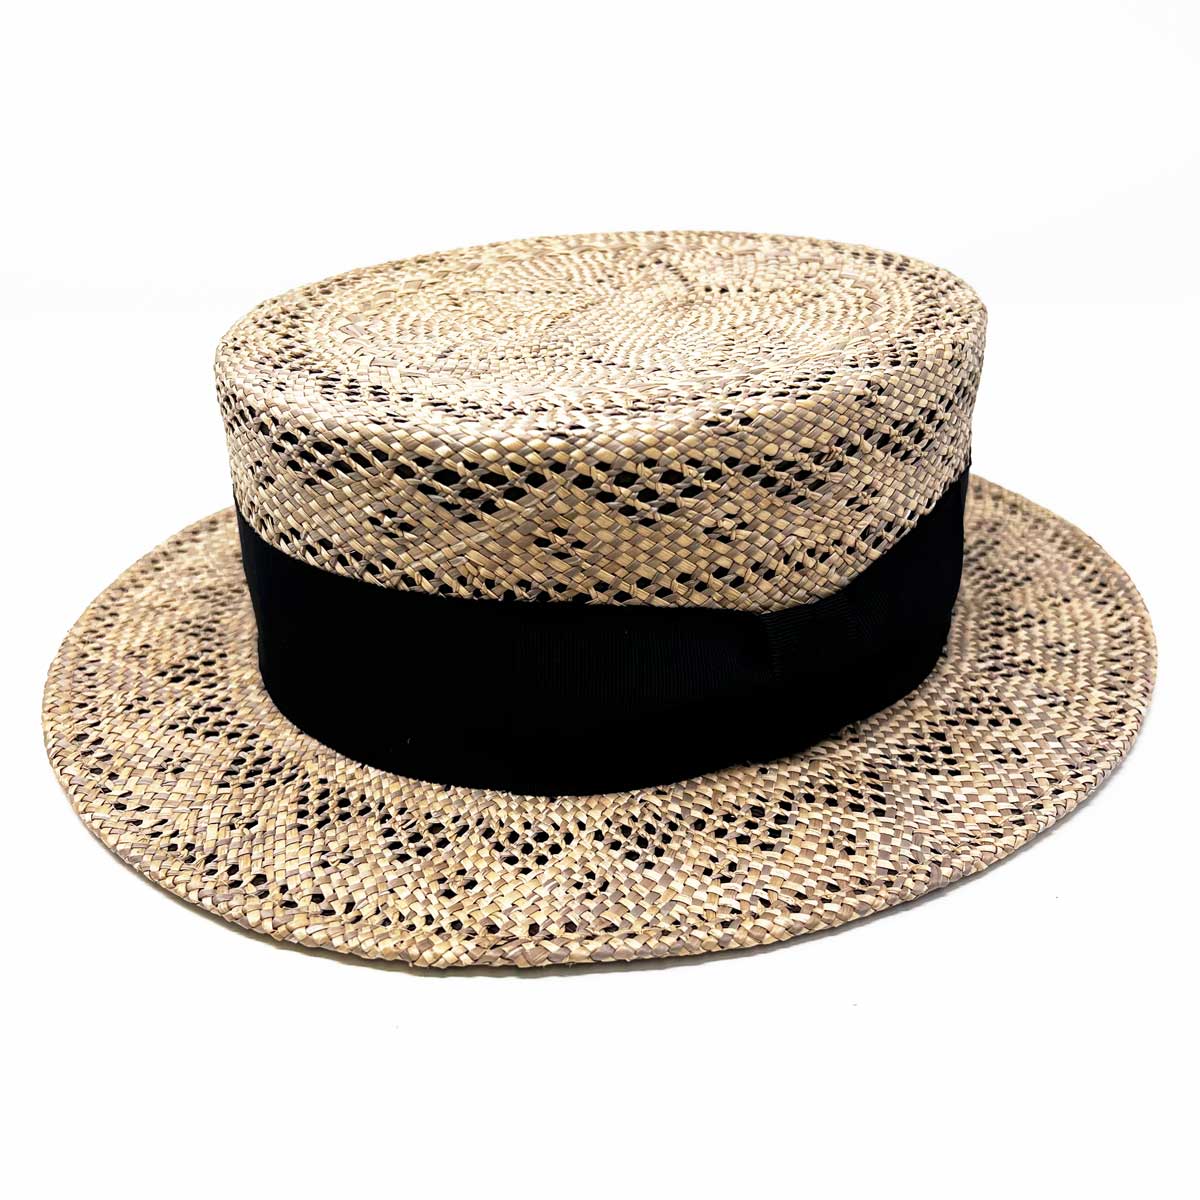 【商品説明】夏の軽装にぴったりな、マーライ草を用いたカンカン帽が入荷です。 個性的な柄編みの帽体と、ツヤの綺麗な帽体を2つ贅沢に使用し、奥行きの感じられるデザインです。 トラディショナルなシルエットにパンチの効いたカラーリングが、エドハットらしいイナセなお帽子です。 職人の手作業ならではの繊細な技巧と伝統を感じる素敵な仕上がりのお帽子です。 カラッとした素材感と軽い被り心地も暑い夏向け。 アロハなどの柄シャツのカジュアルスタイル、オーセンティックなワイシャツスタイル、はたまた浴衣などの和装にもぜひおすすめしたい逸品です。 形 カンカン帽（キャノティエ/キャノチエ） テイスト カジュアル（普段使い/定番） カラー ブラウン（茶）/ライトブラウン/ダークブラウン 柄 総柄 原産国 日本（Japan） 素材 麻・リネン サイズ サイズ：59.5cm(サイズ調整アジャスター付)/高さ：8.5cm/ブリム：6cm/原産国：日本製/素材：天然草木100％ MENS/LADIES メンズ（男性）/ユニセックス（男女兼用） シーズン 春夏・夏 年度 2023 お手入れ方法 ・水洗い不可・片手でブリムを持つと変形の原因となりますので必ず両手でお持ち下さい。・汚れが付いた場合は固く絞った布で優しく拭き取って下さい。・長期間保管する場合は形を整えて箱に入れ防虫剤や湿気取りなどと一緒に保管して下さい。・手作業で製作されており繊細な素材を使用しておりますので引っ張ったり物を重ねて置かないでください。 EDOHAT(エドハット)について 1918年東京の城下町、日本橋にて創業。江戸の文化とともに歩んできたブランド。 長年培ったノウハウを引き継ぎ現代に見合うモノ作りの大切さ、未来へ羽ばたく一つのキッカケとして、エドハットがスタートしました。 ED HAT(エドハット）の売りでもある、スタンダード、シンプル、ベーシックをコンセプトに、 品質にこだわり、出来る限り国内の職人にて作り上げる「日本製」でのモノ作りを心掛けています。 頭のてっぺんに乗せる一番大切なもの！ 「粋でイナセであってほしい」そんな思いで帽子を制作されているそうです。（公式紹介文より）